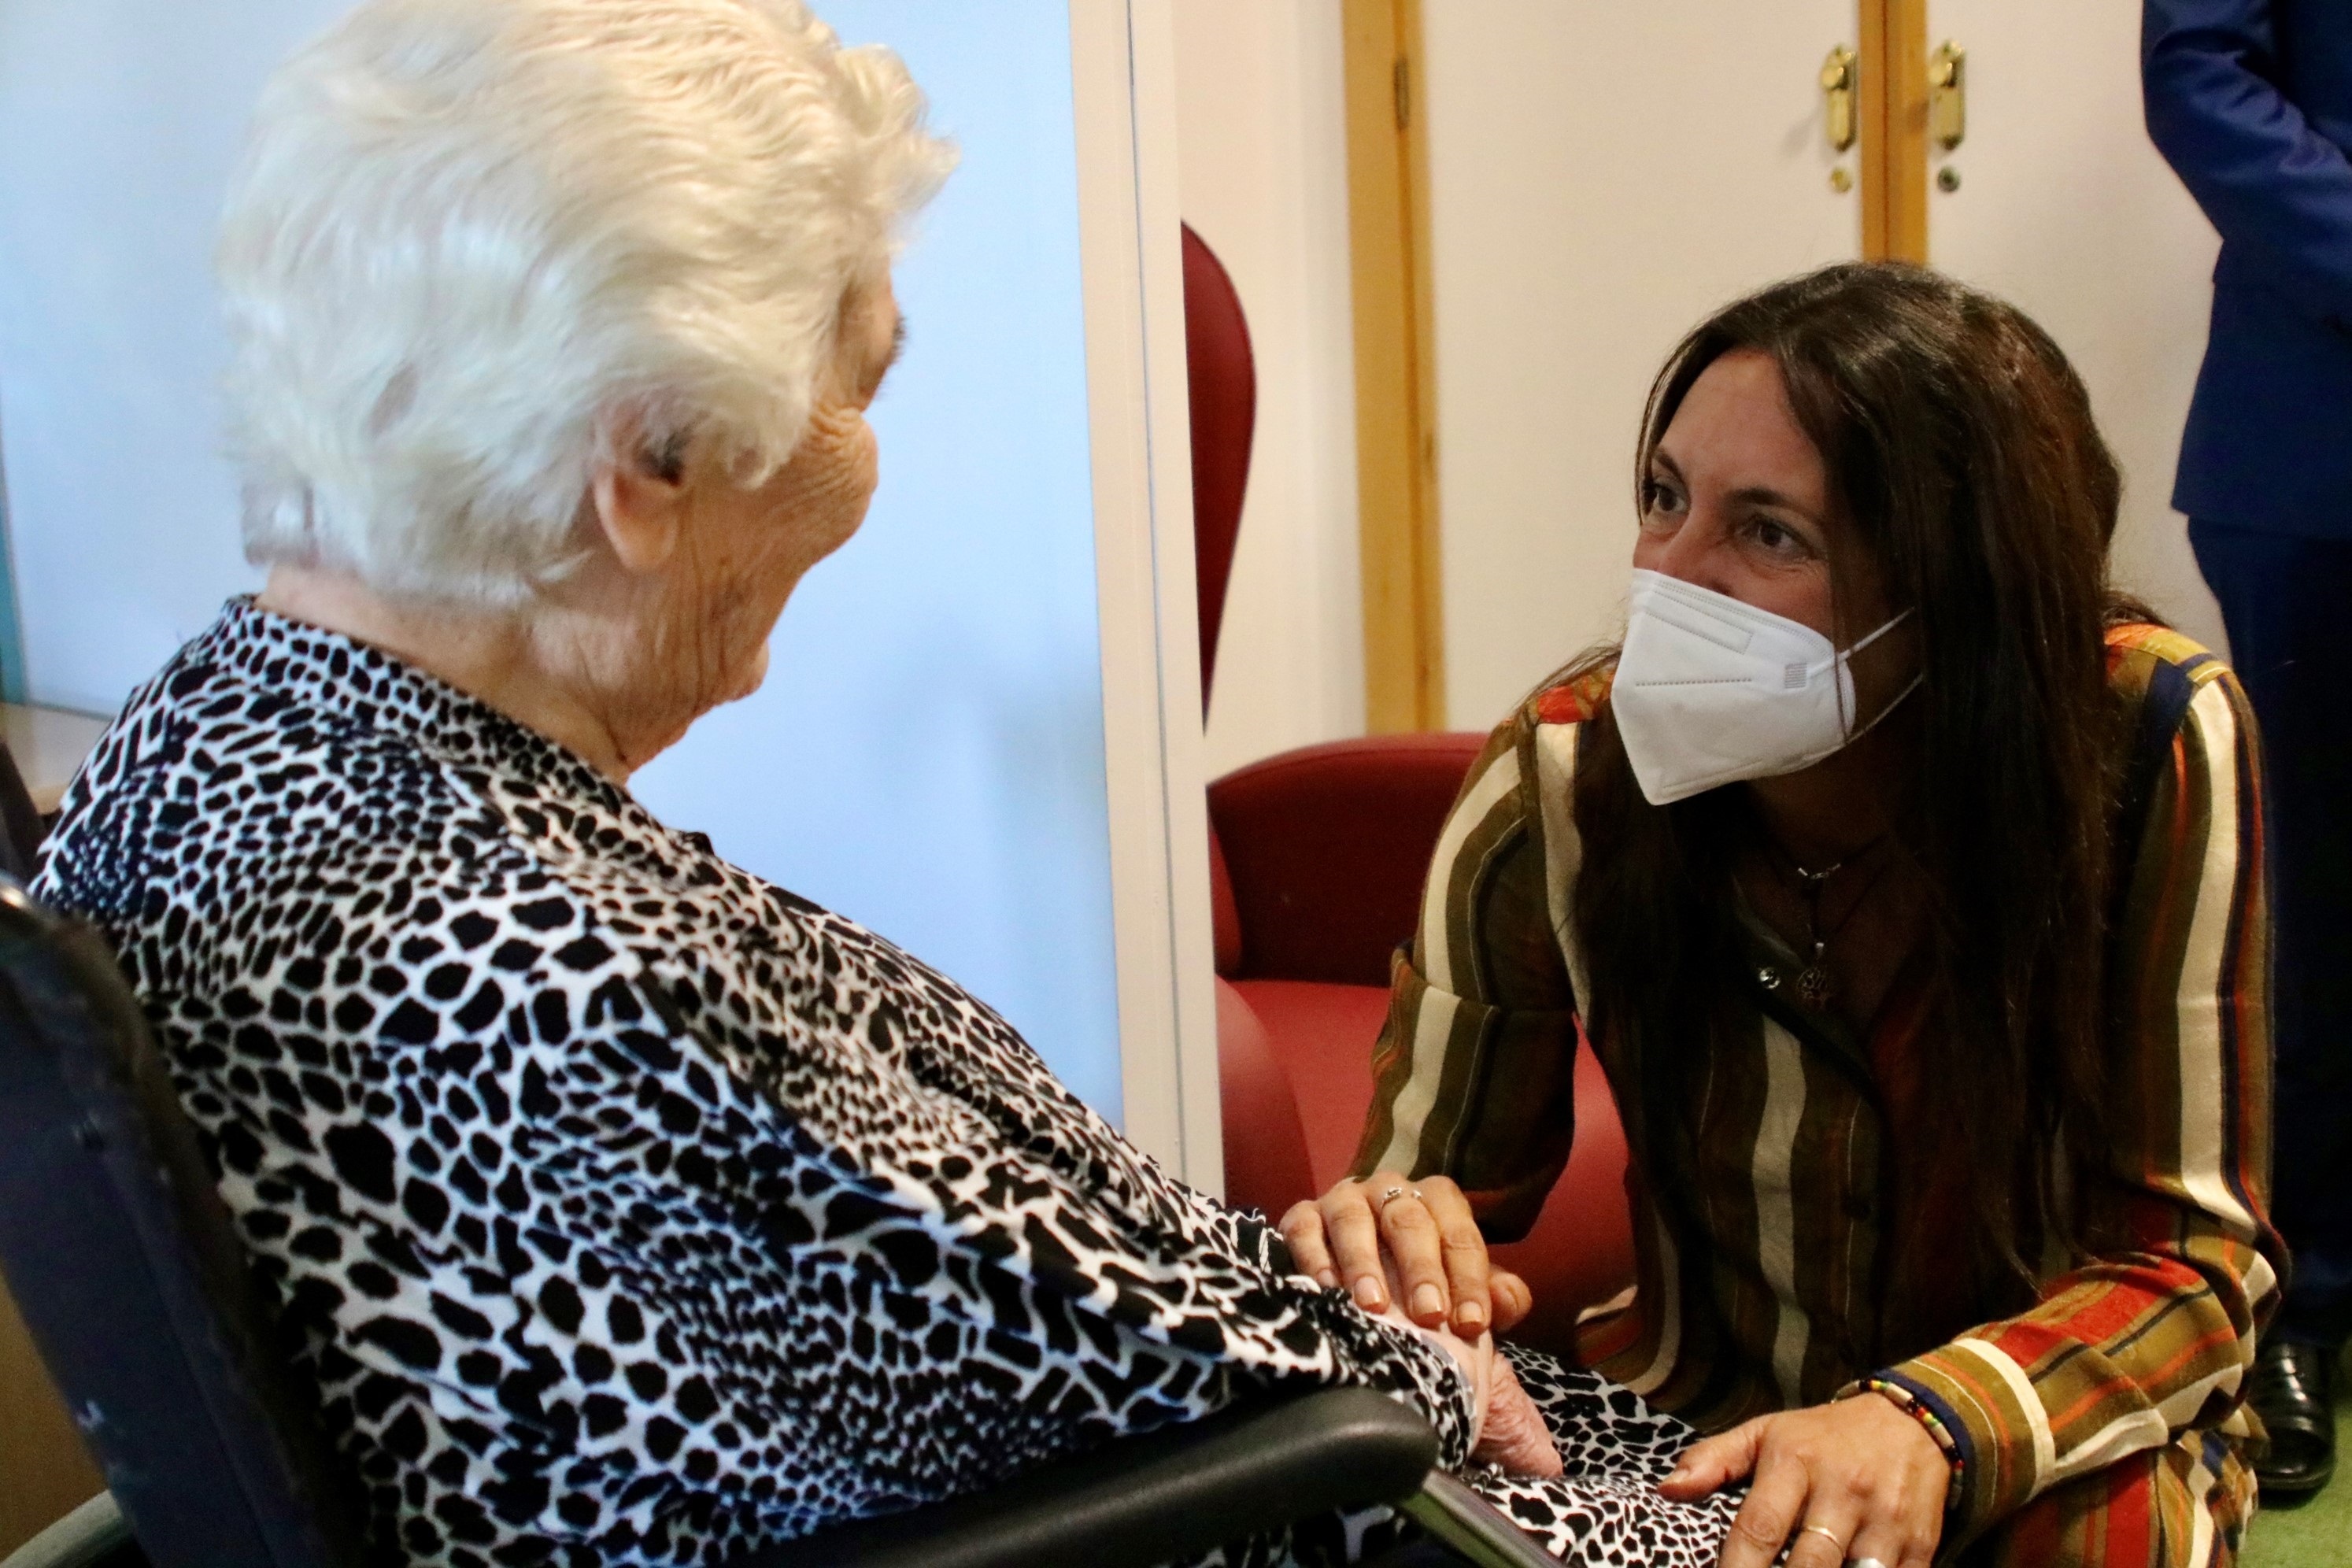 La consejera de Inclusin Social, Loles Lpez, charla con una anciana durante su visita a una residencia.